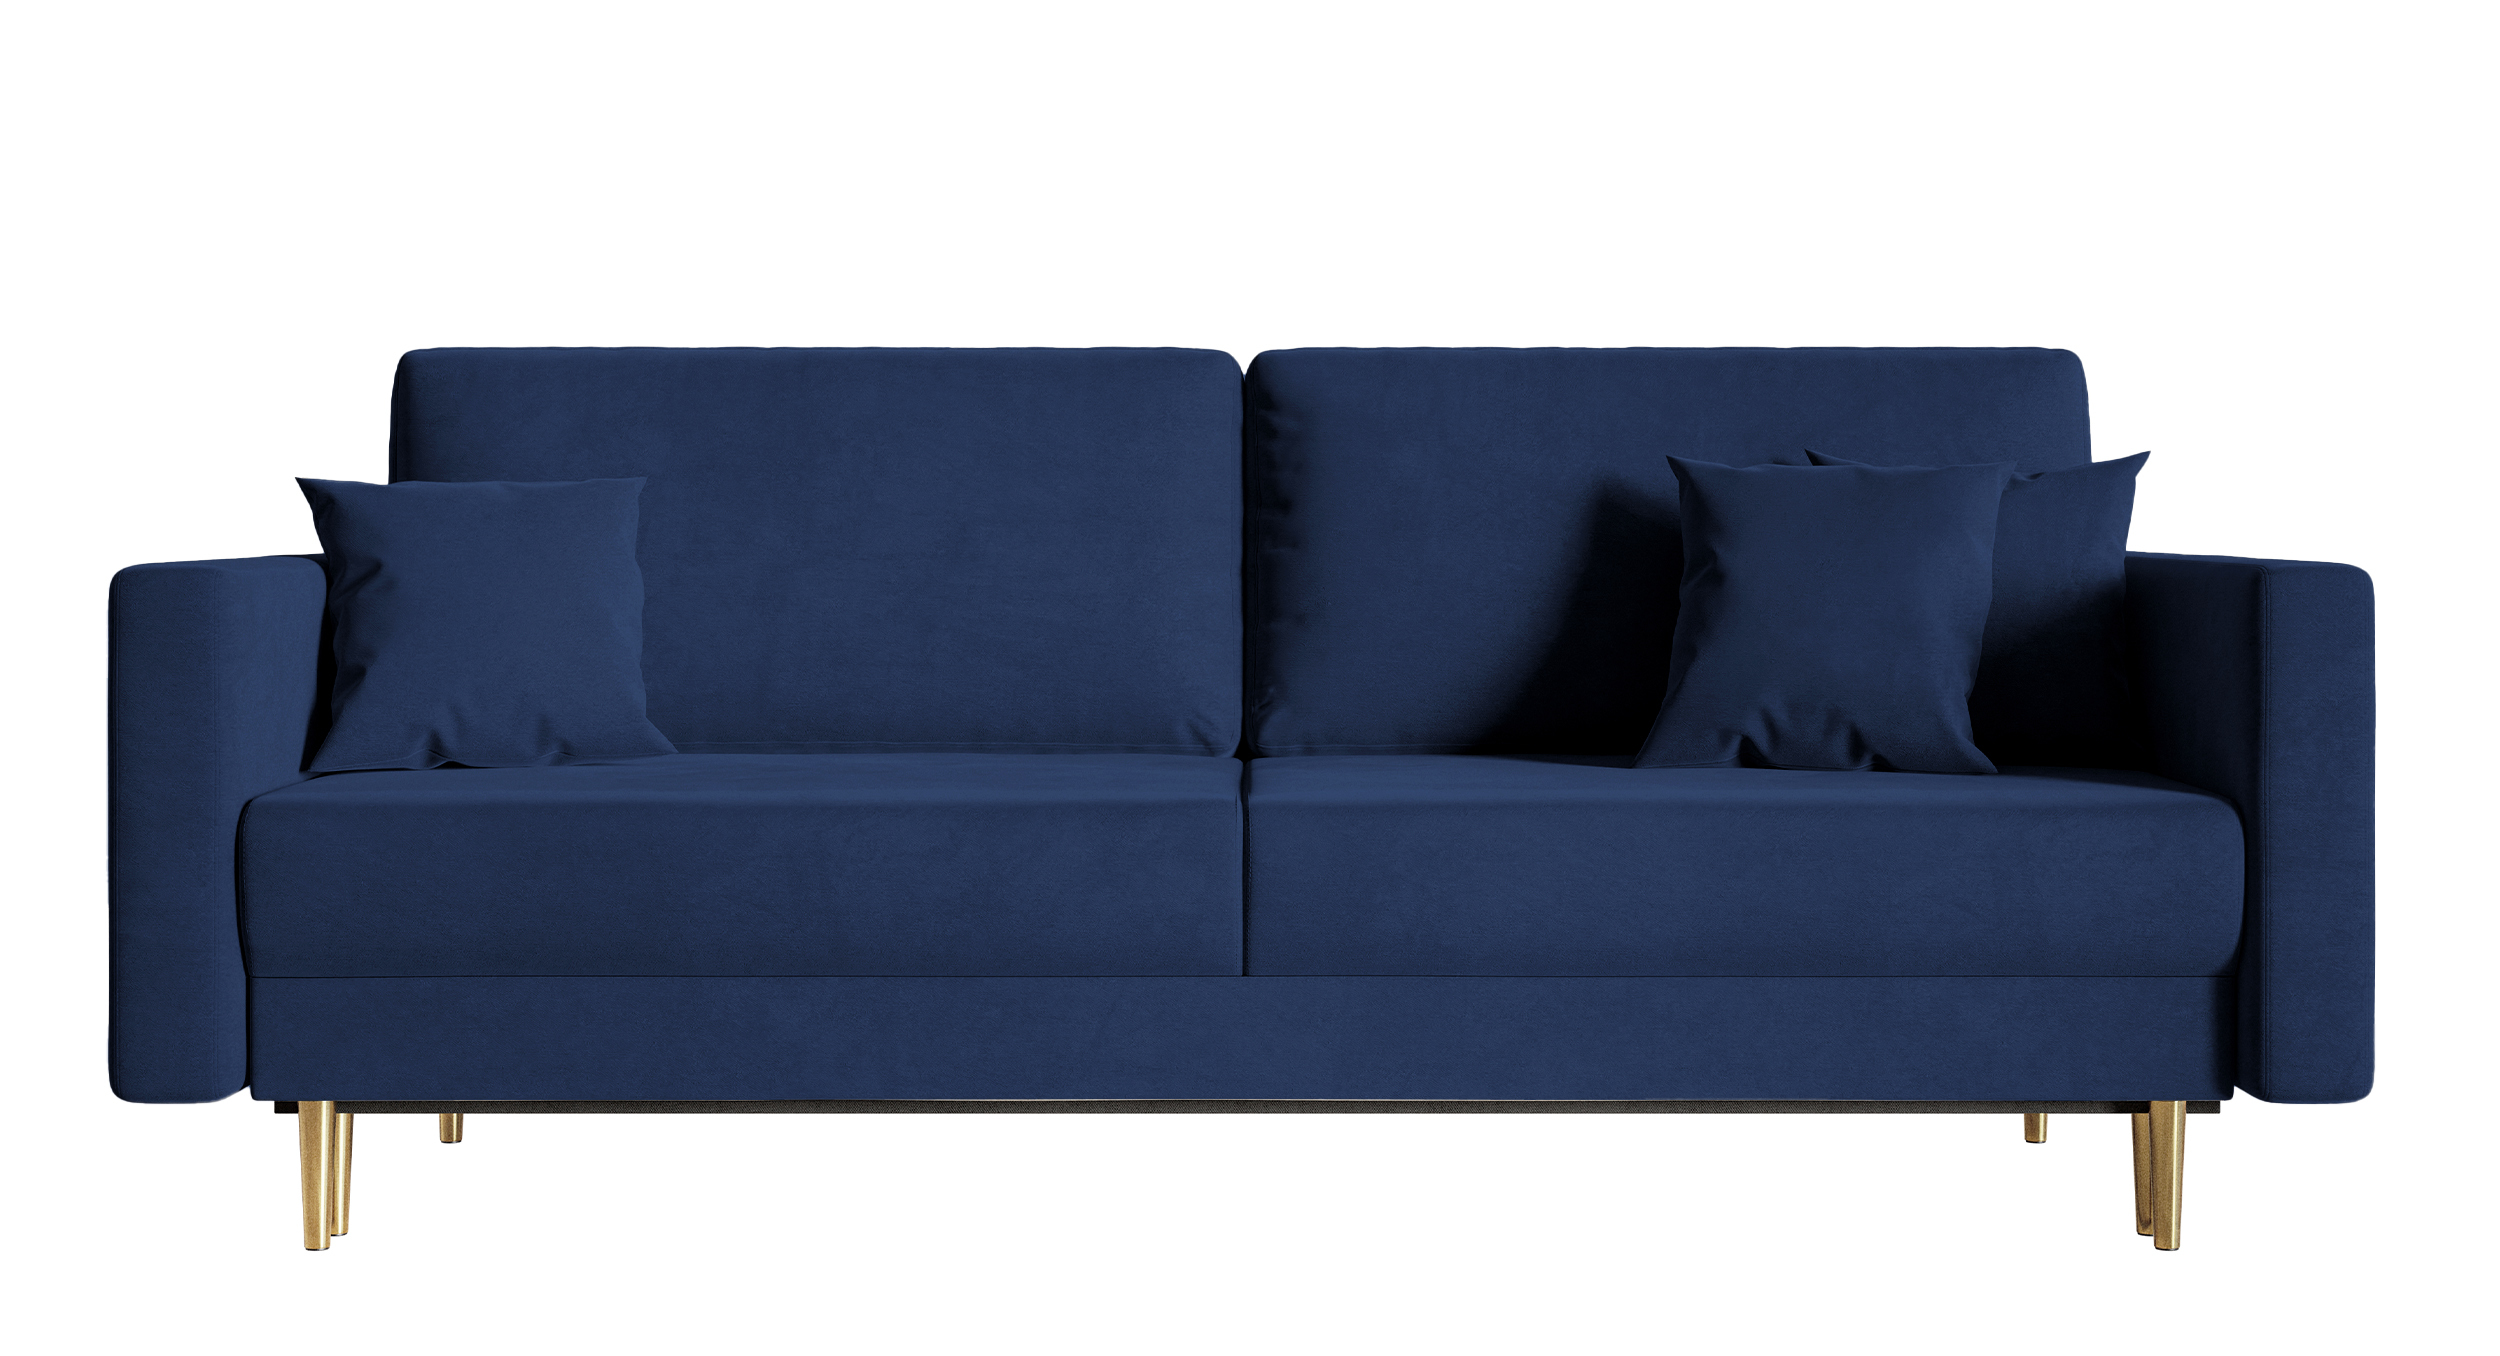 VALICO Canapé-lit trois places en velours bleu marine hydrophobe